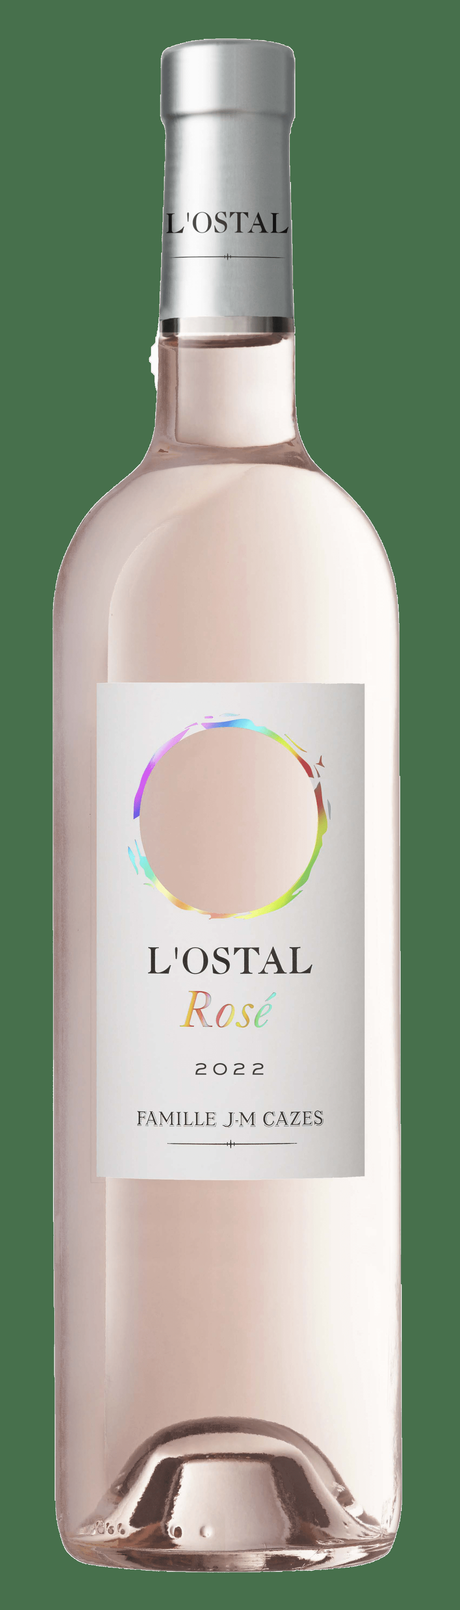 L’Ostal Rosé 2022 : L’éloge de l’élégance du Languedoc